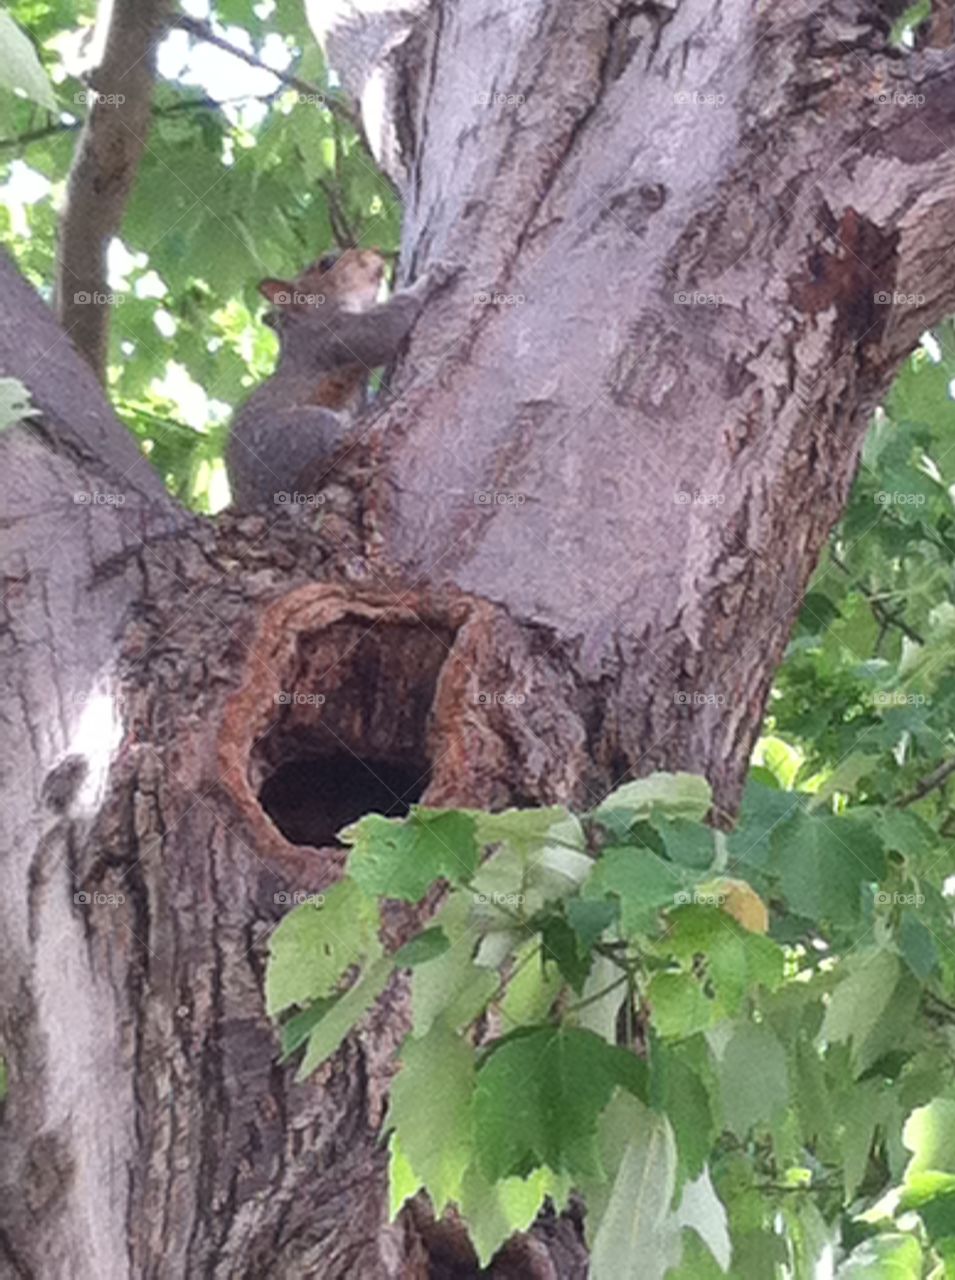 Squirrel hiding on tree branch